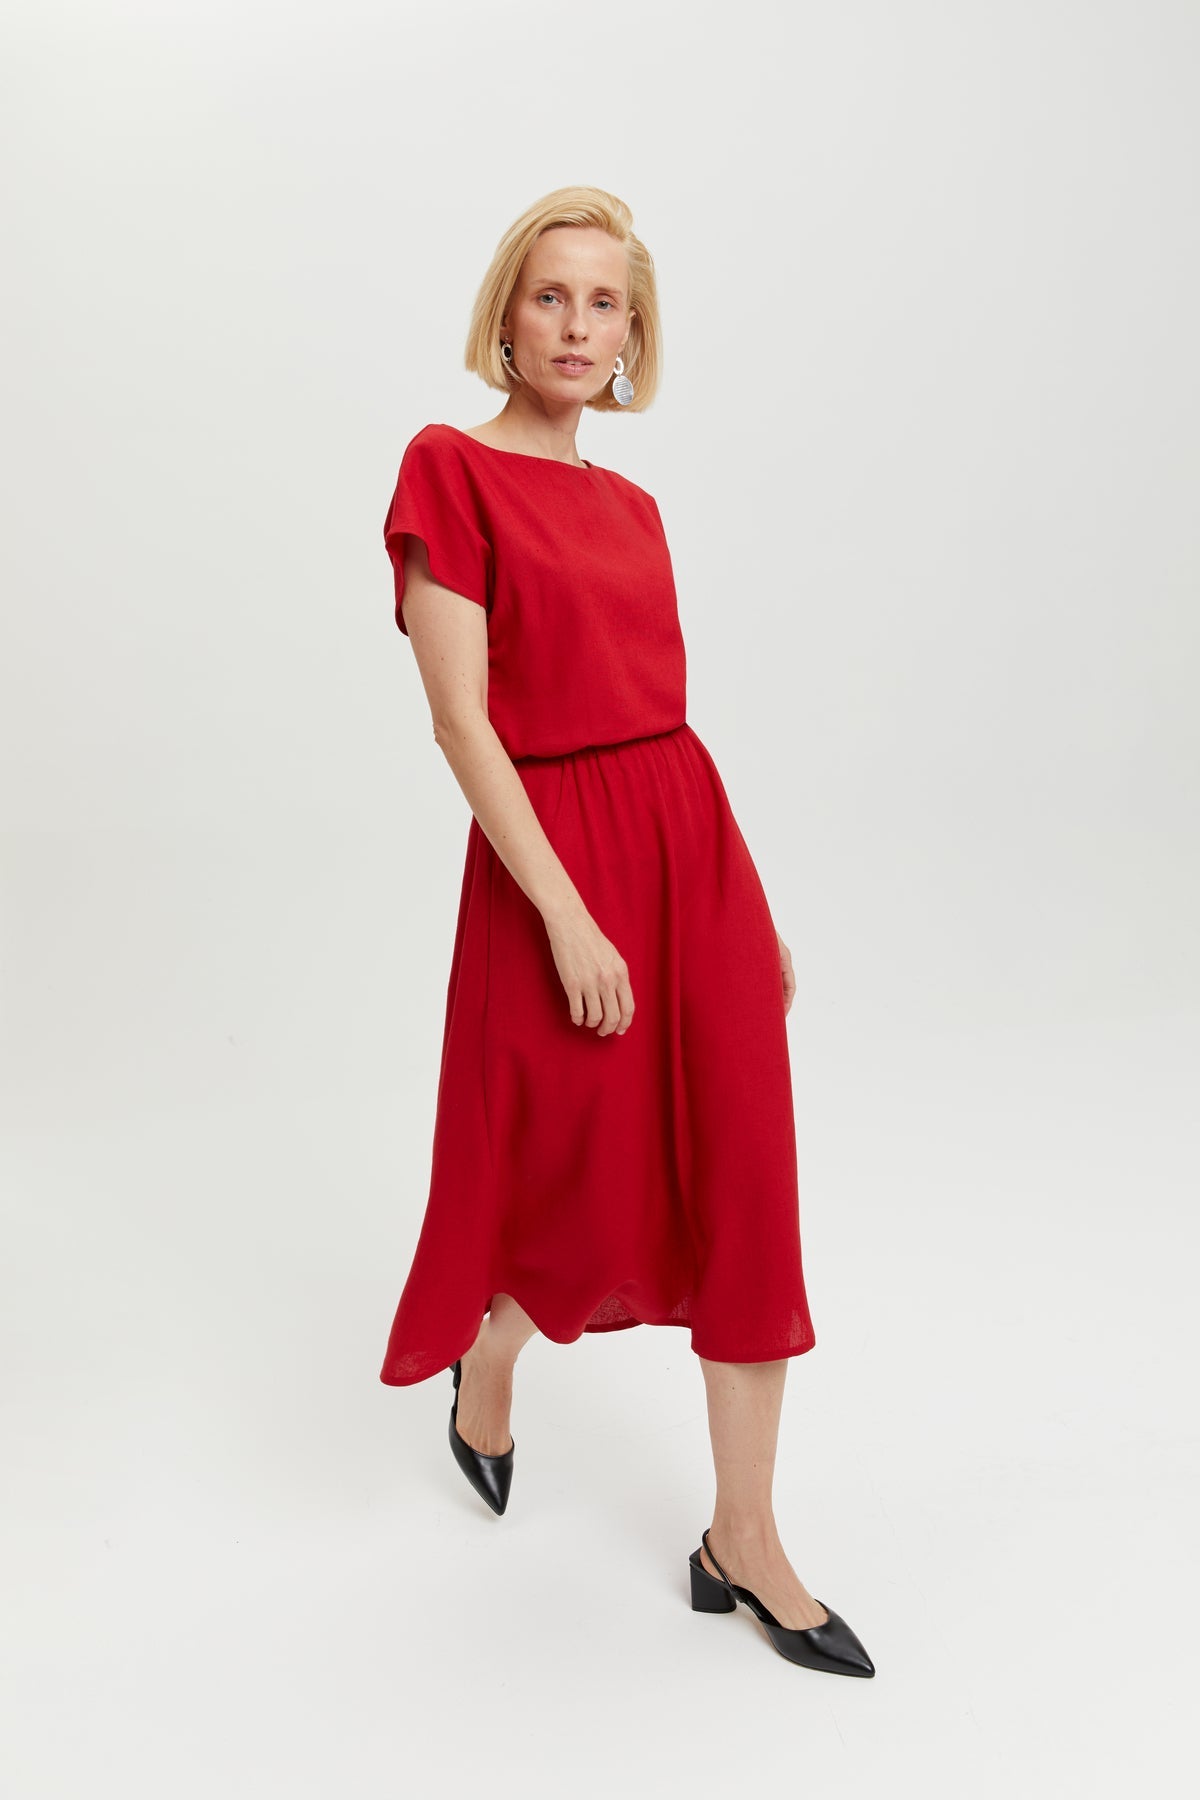 Nane | Leinenkleid mit kurzen Ärmeln in Rot von Ayani